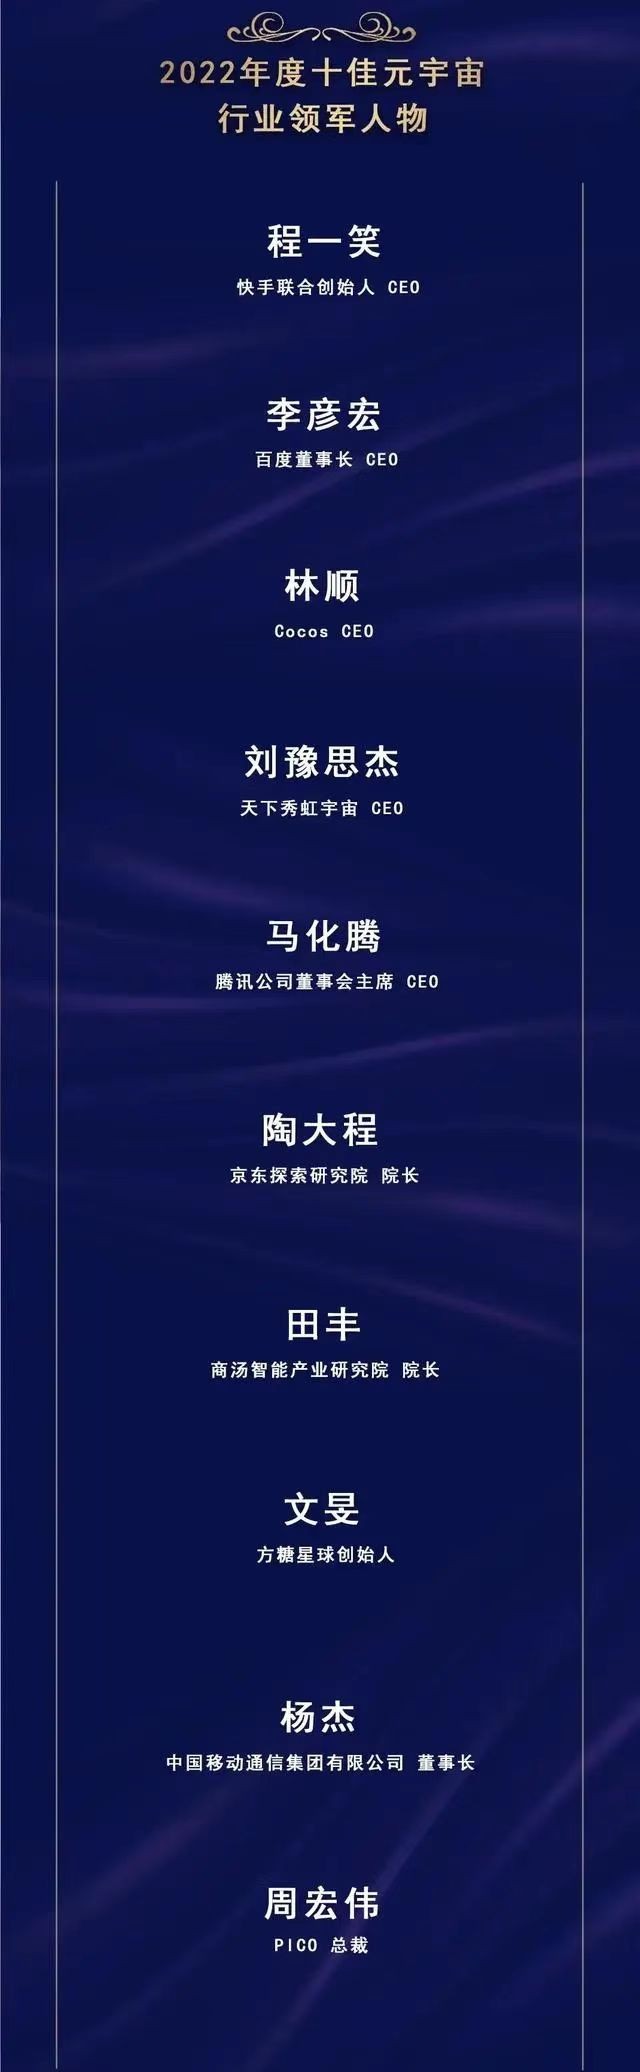 中国移动杨杰获2022年度十佳元宇宙行业领军人物奖